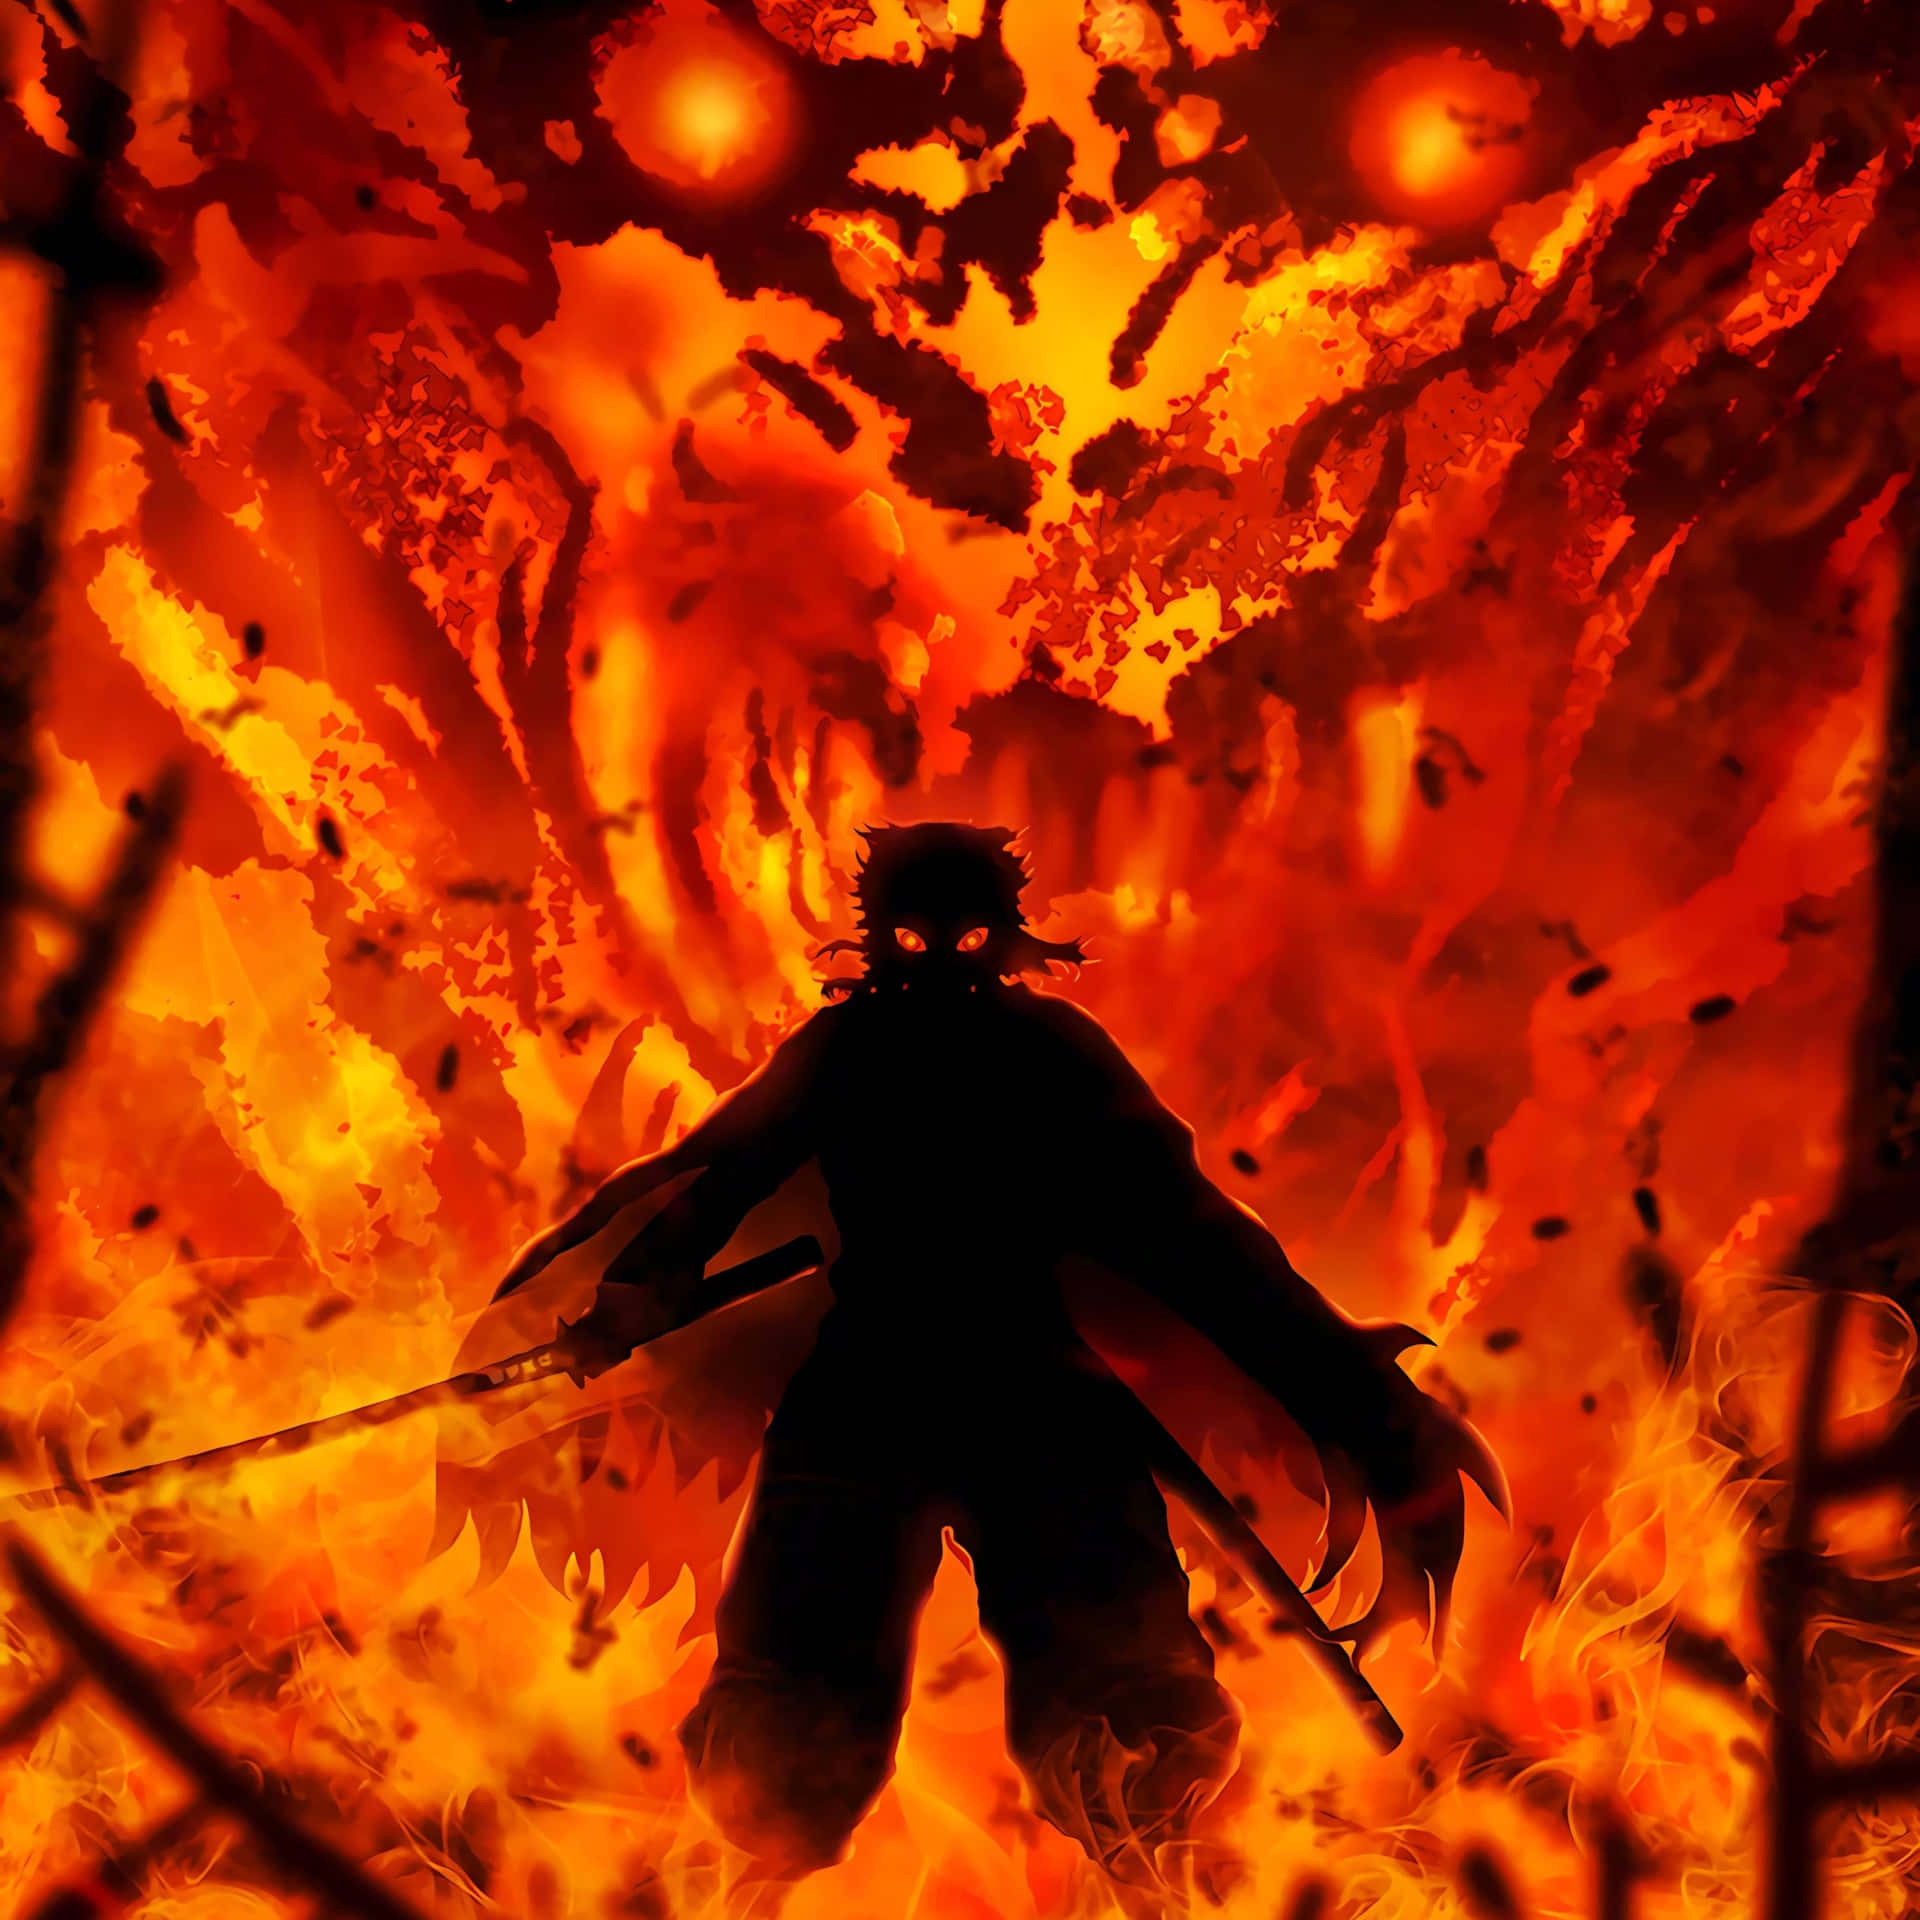 Anime Character Fire Sword Wallpaper Anime Stock Illustration 2309893841 |  Shutterstock